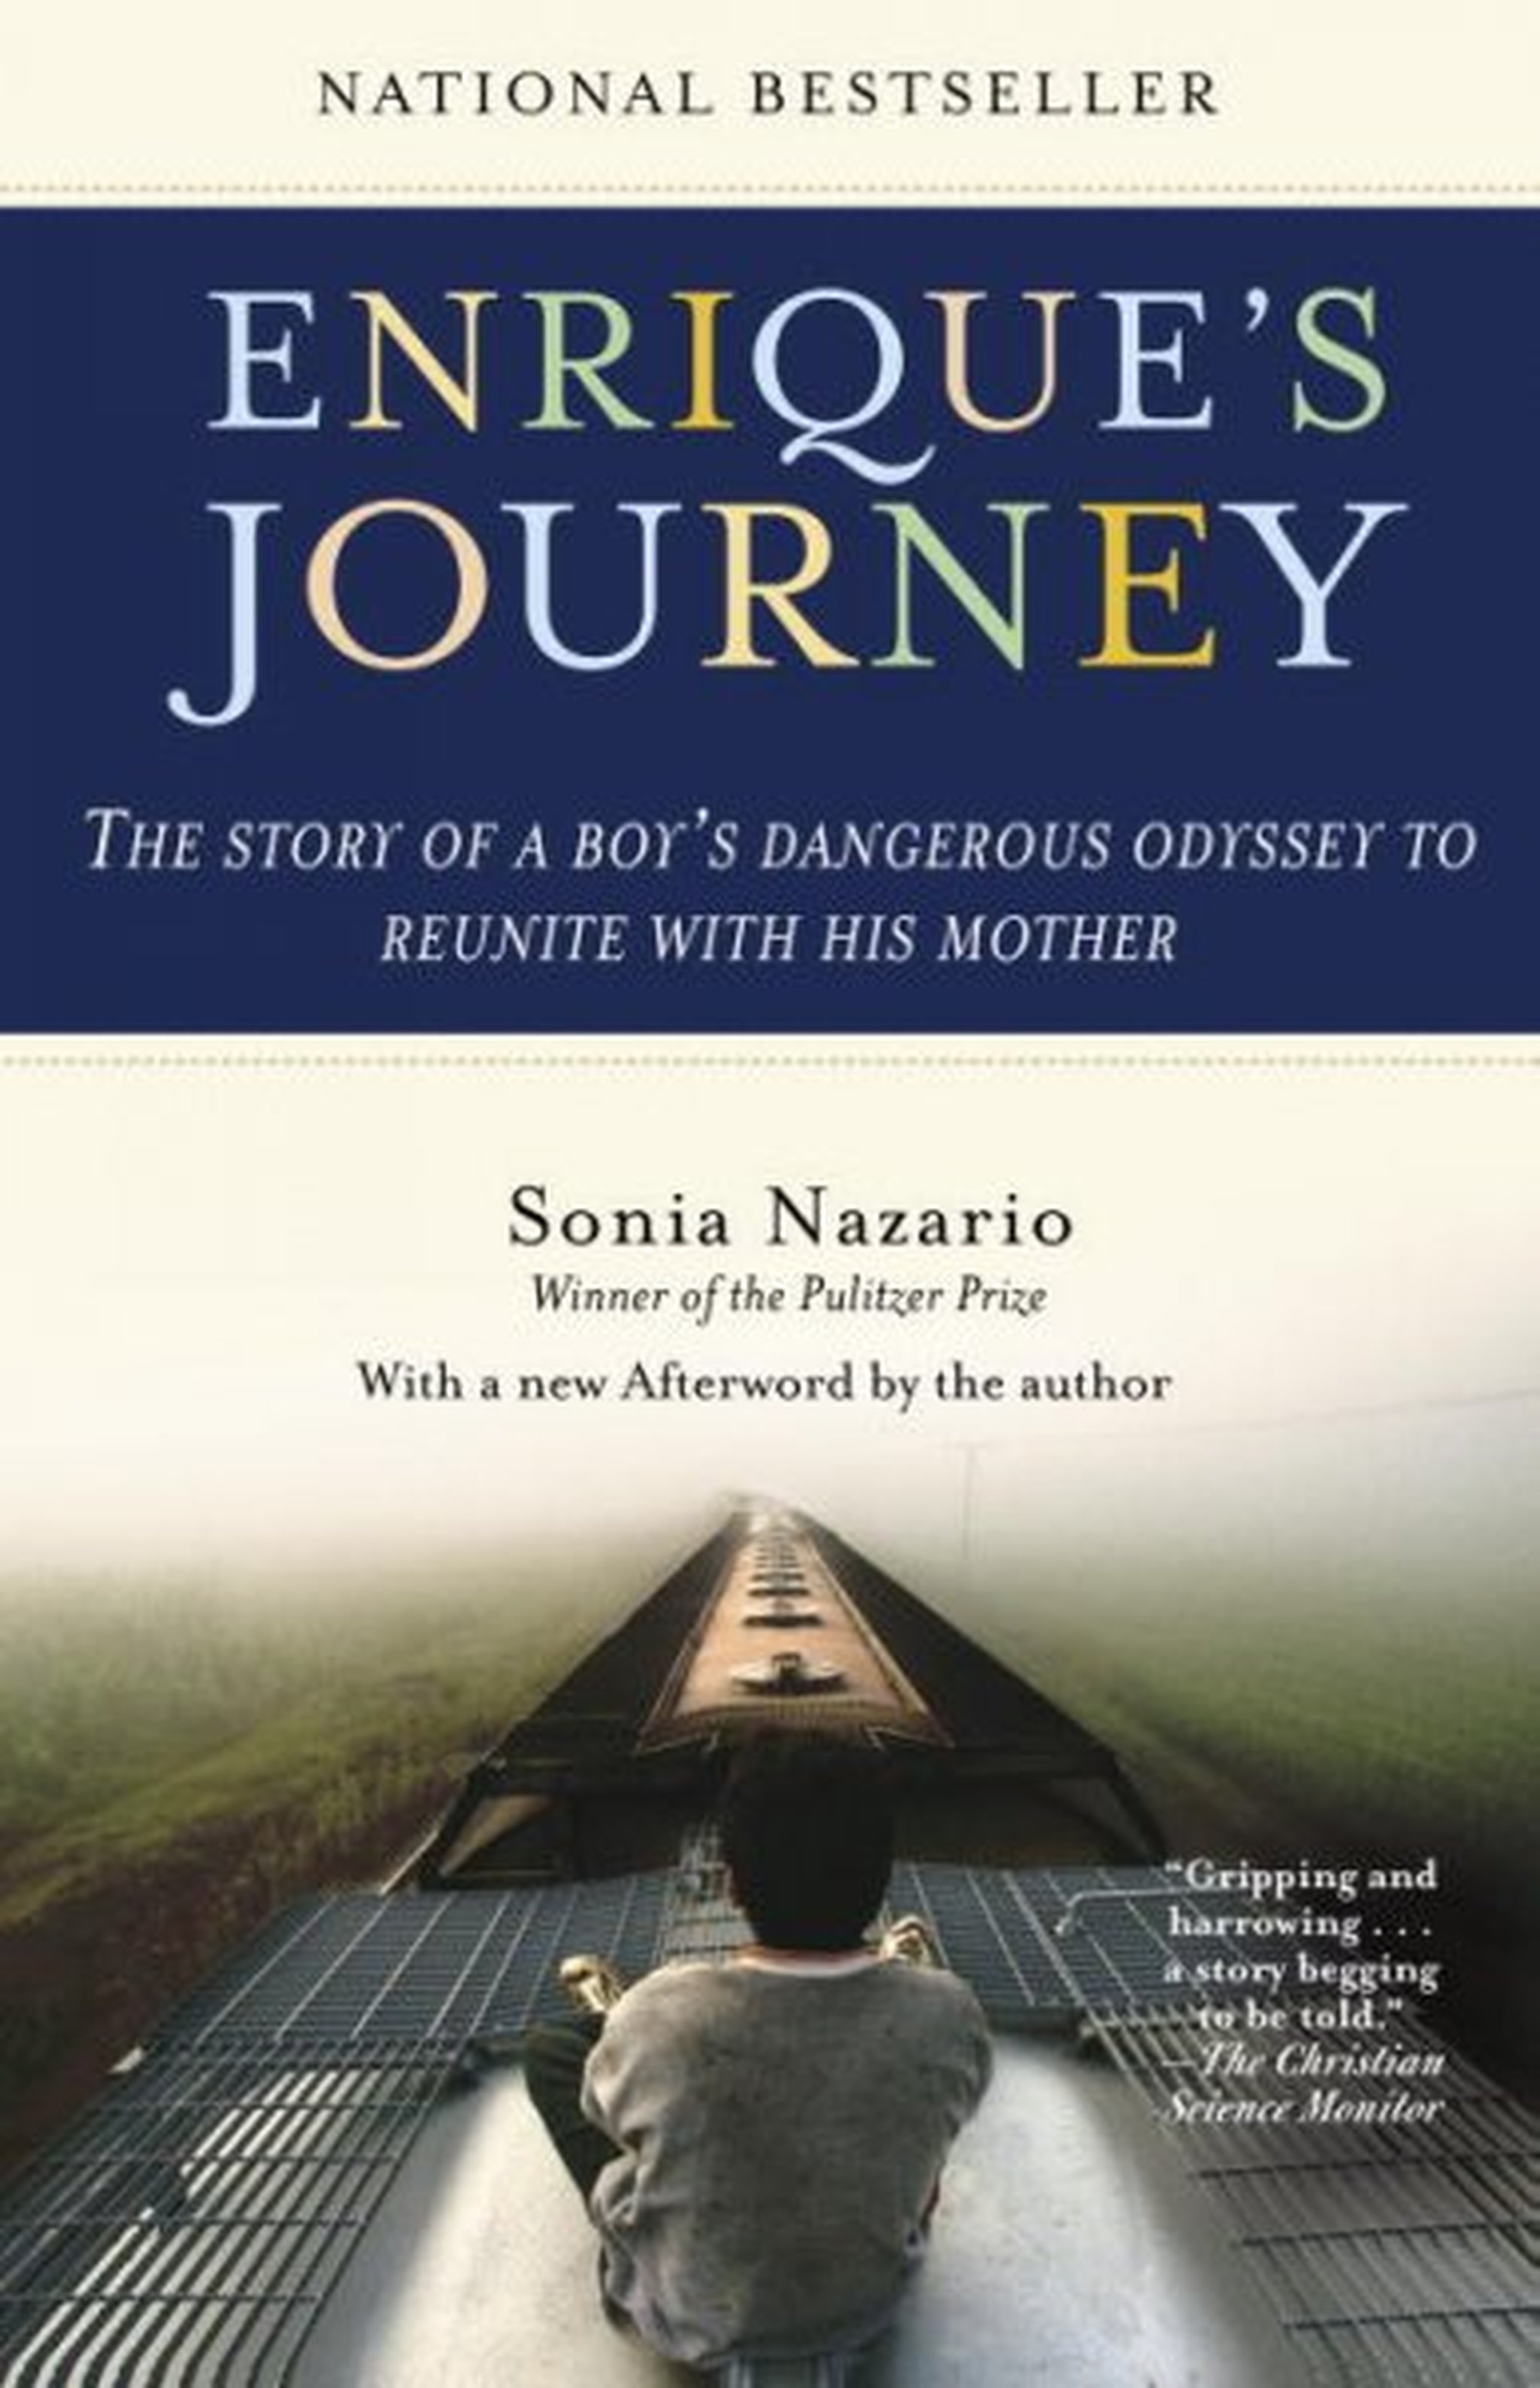 Mossotti-Chavez_Enriques Journey book review